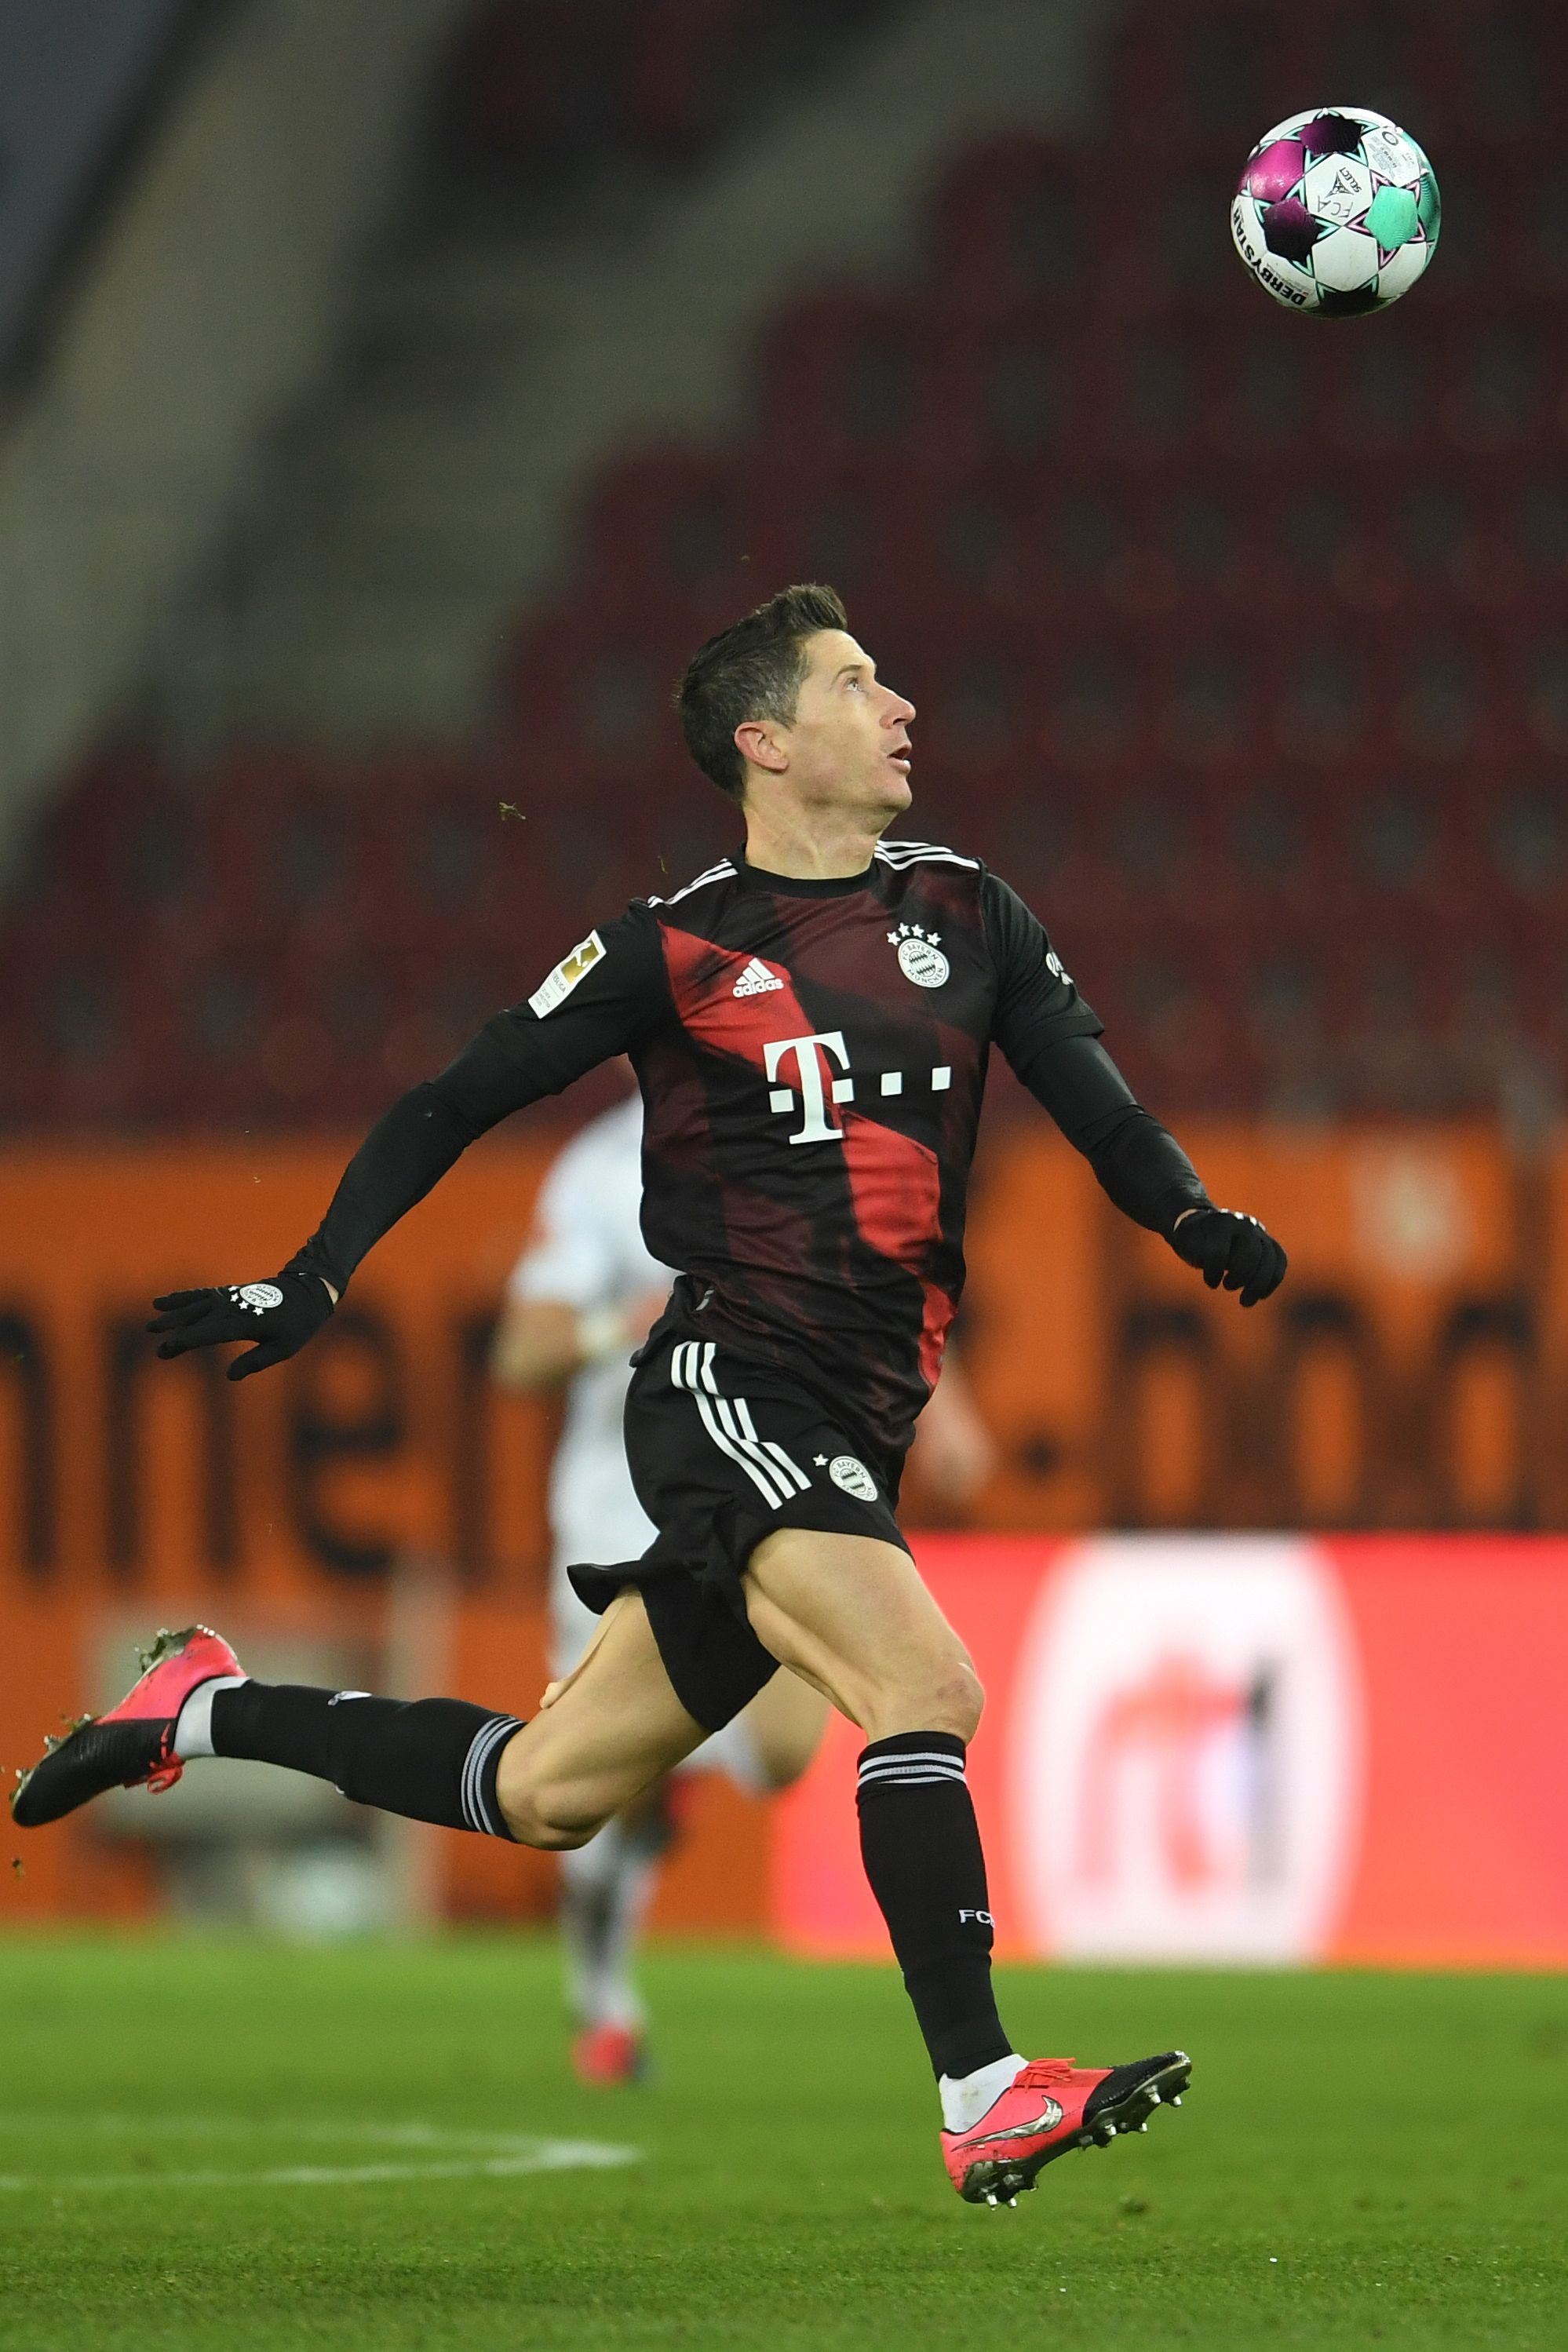 Allemagne: Lewandowski marche sur l'eau, le Bayern sur la Bundesliga